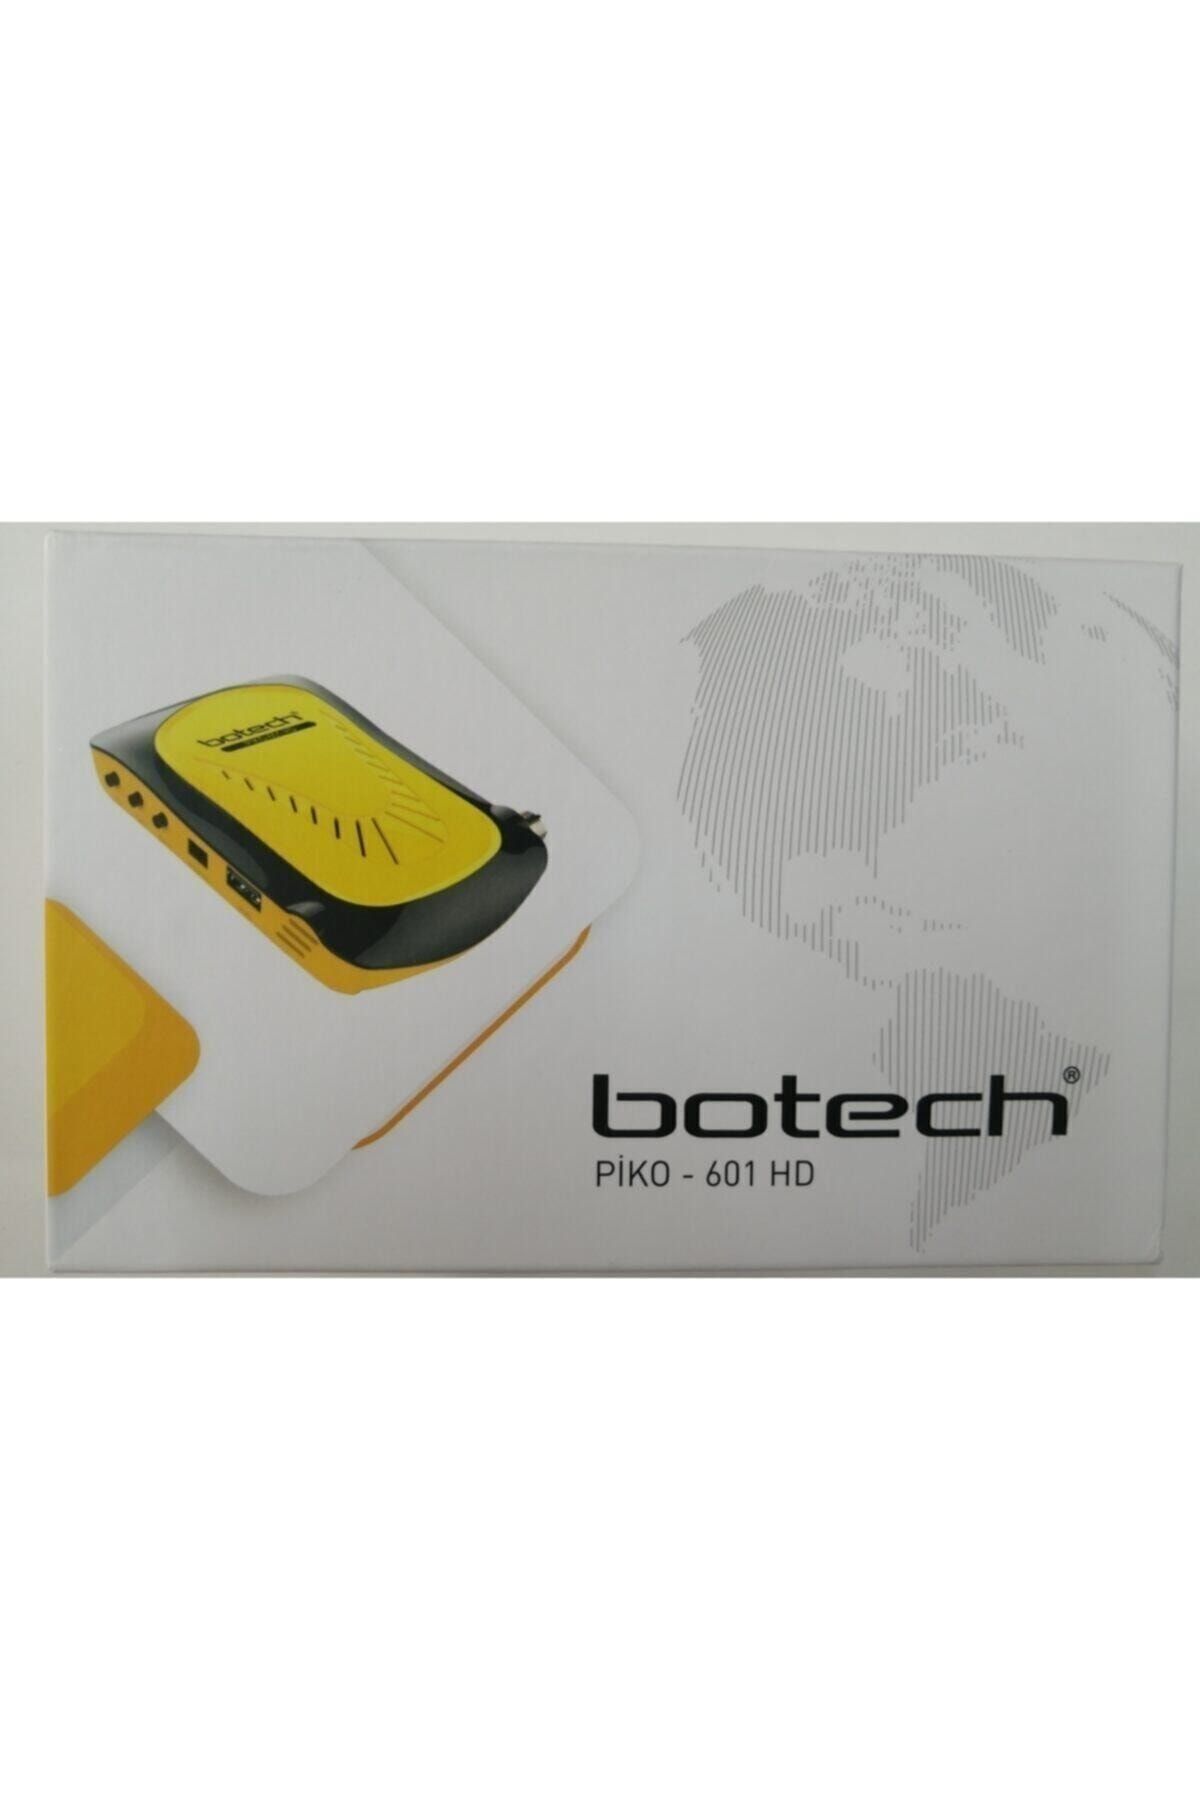 Botech Piko 601 Full Hd Mini Uydu Alıcısı